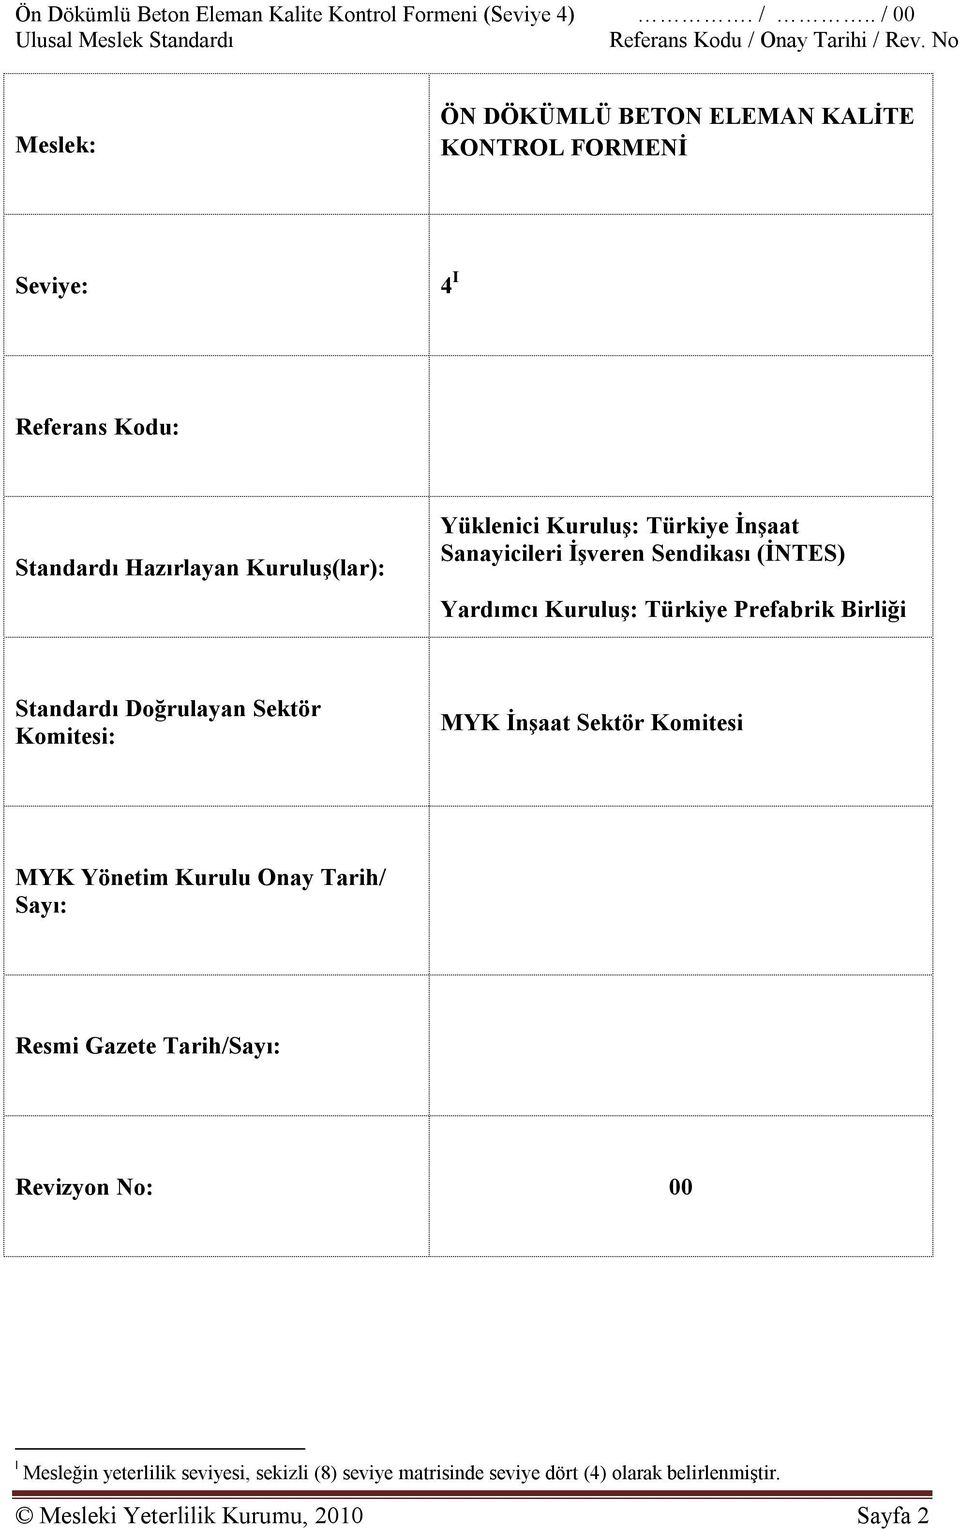 Türkiye İnşaat Sanayicileri İşveren Sendikası (İNTES) Yardımcı Kuruluş: Türkiye Prefabrik Birliği Standardı Doğrulayan Sektör Komitesi: MYK